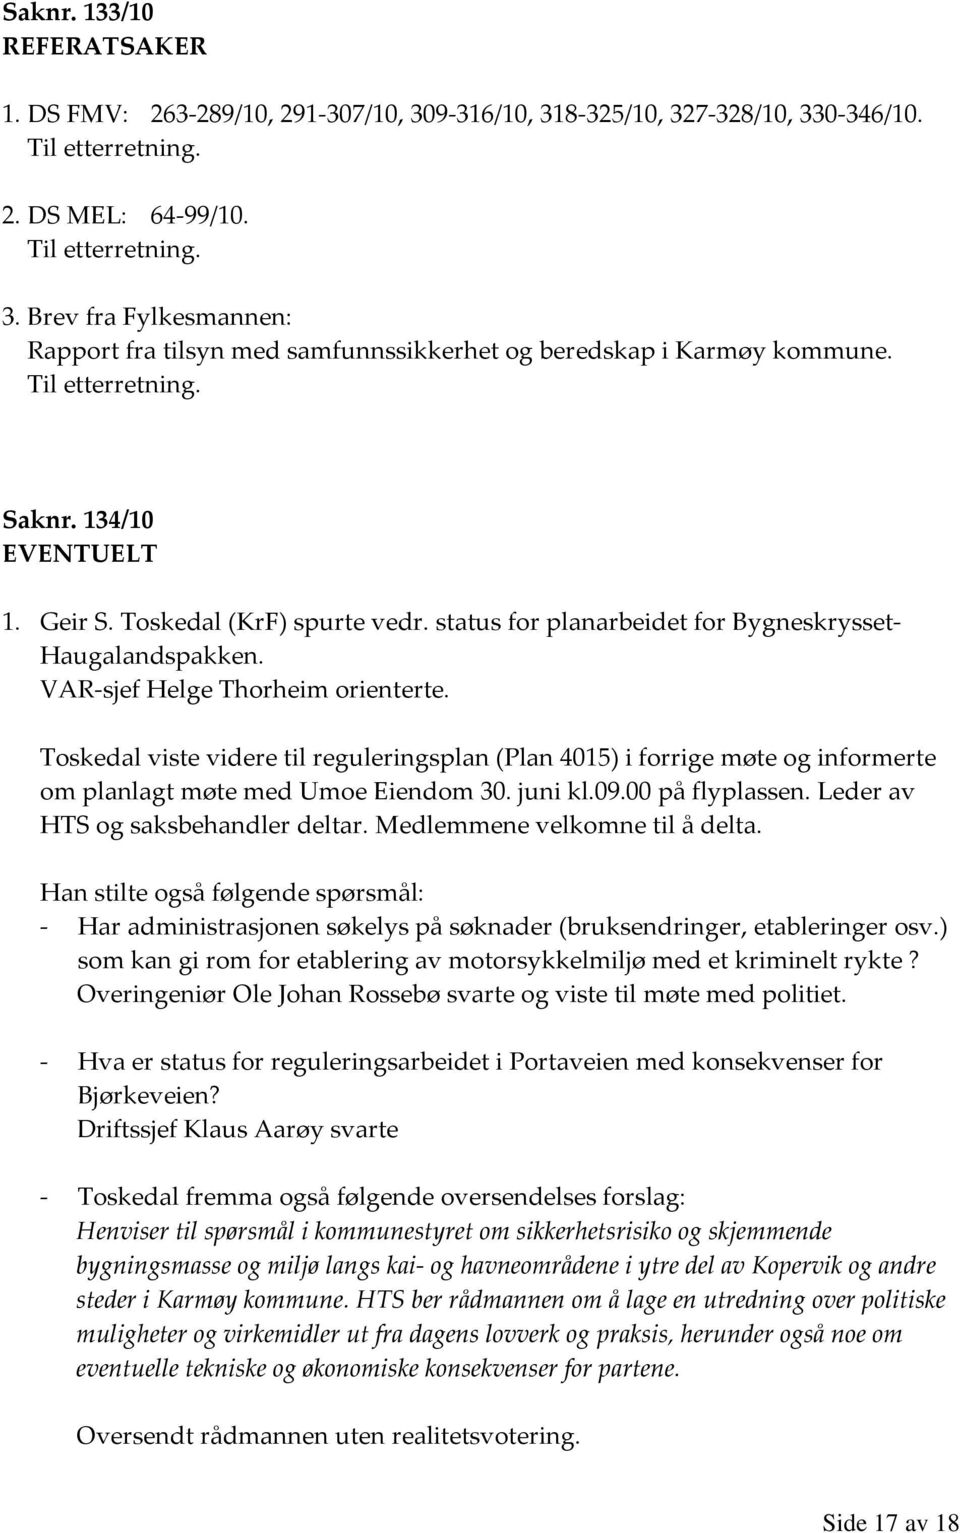 Toskedal viste videre til reguleringsplan (Plan 4015) i forrige møte og informerte om planlagt møte med Umoe Eiendom 30. juni kl.09.00 på flyplassen. Leder av HTS og saksbehandler deltar.